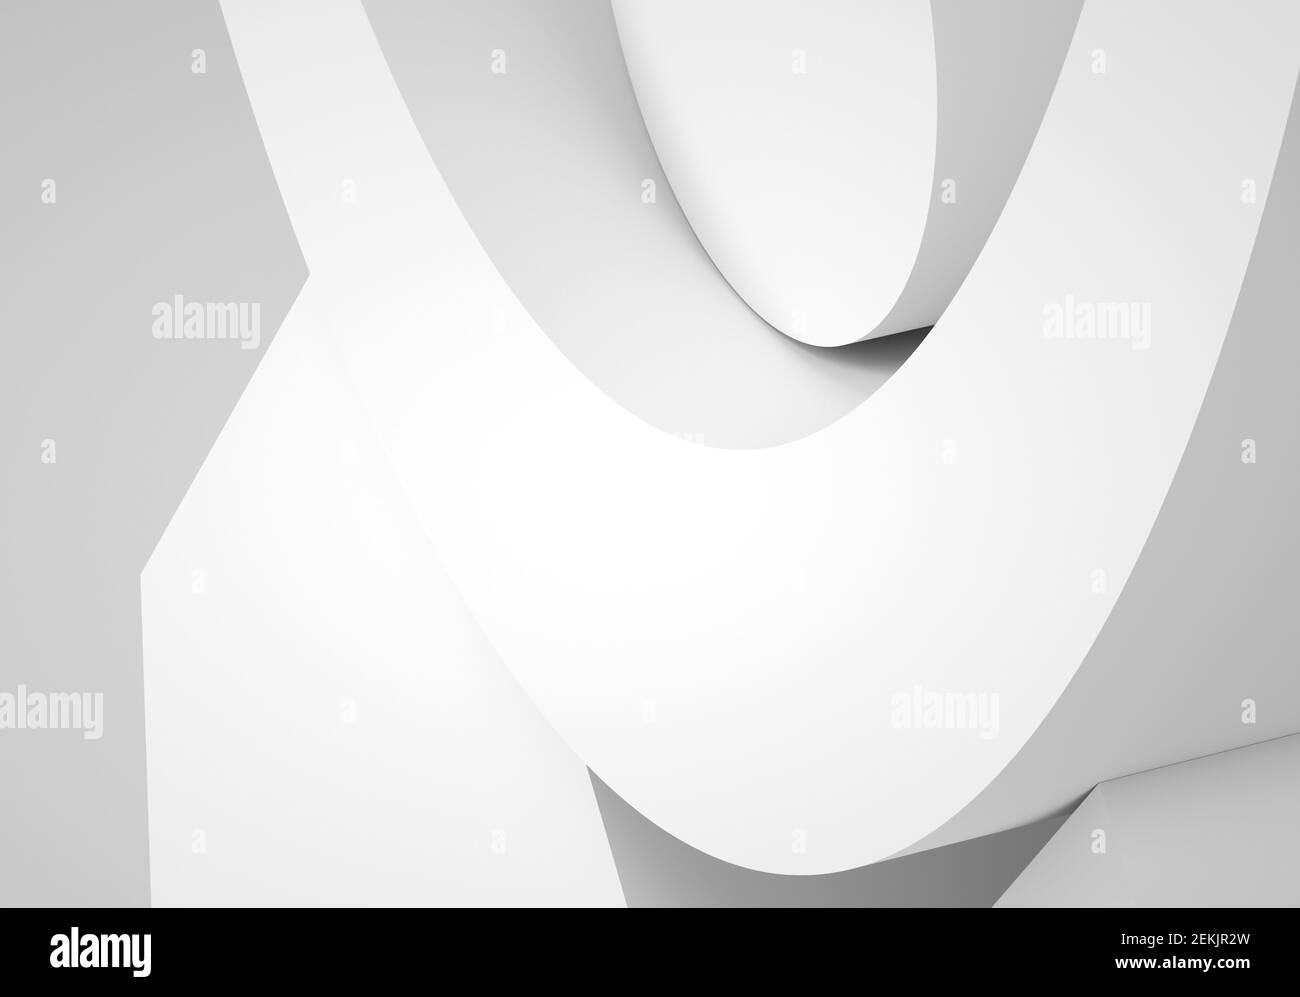 Résumé arrière-plan minimal. Formes géométriques blanches avec ombres douces. illustration du rendu 3d Banque D'Images